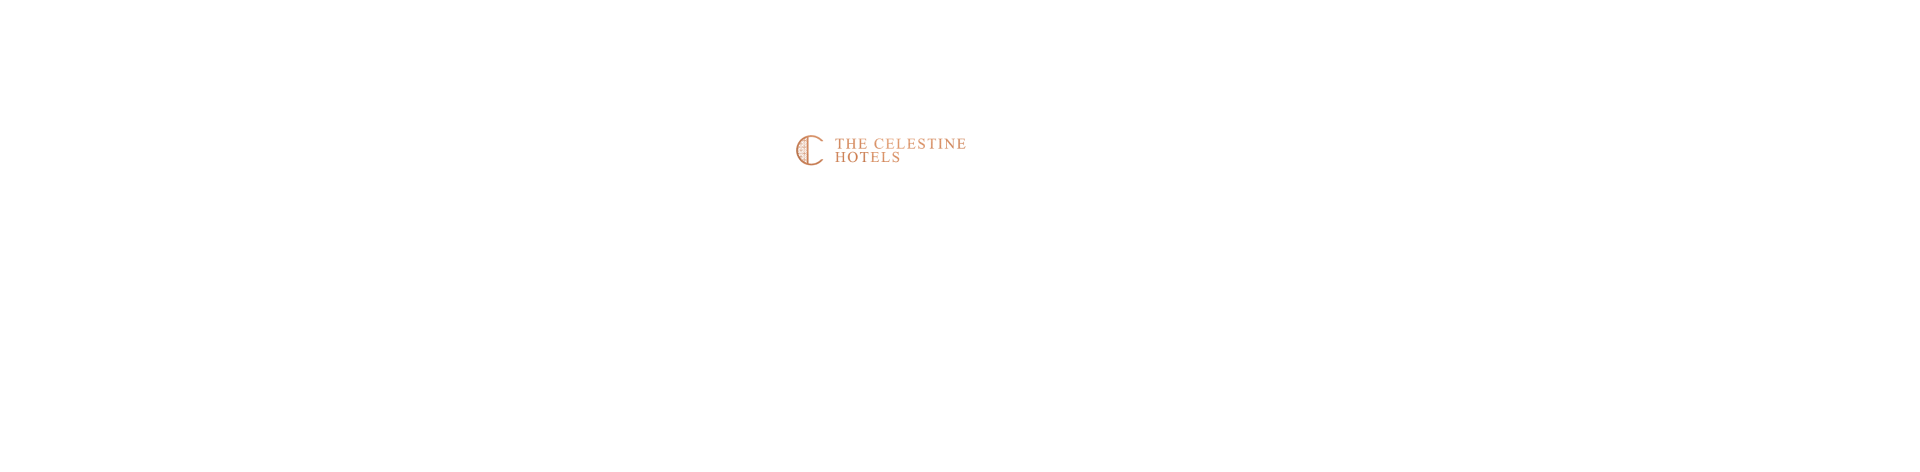 三井不動産ホテルマネジメント 全国38のホテルで使えるクーポン特集